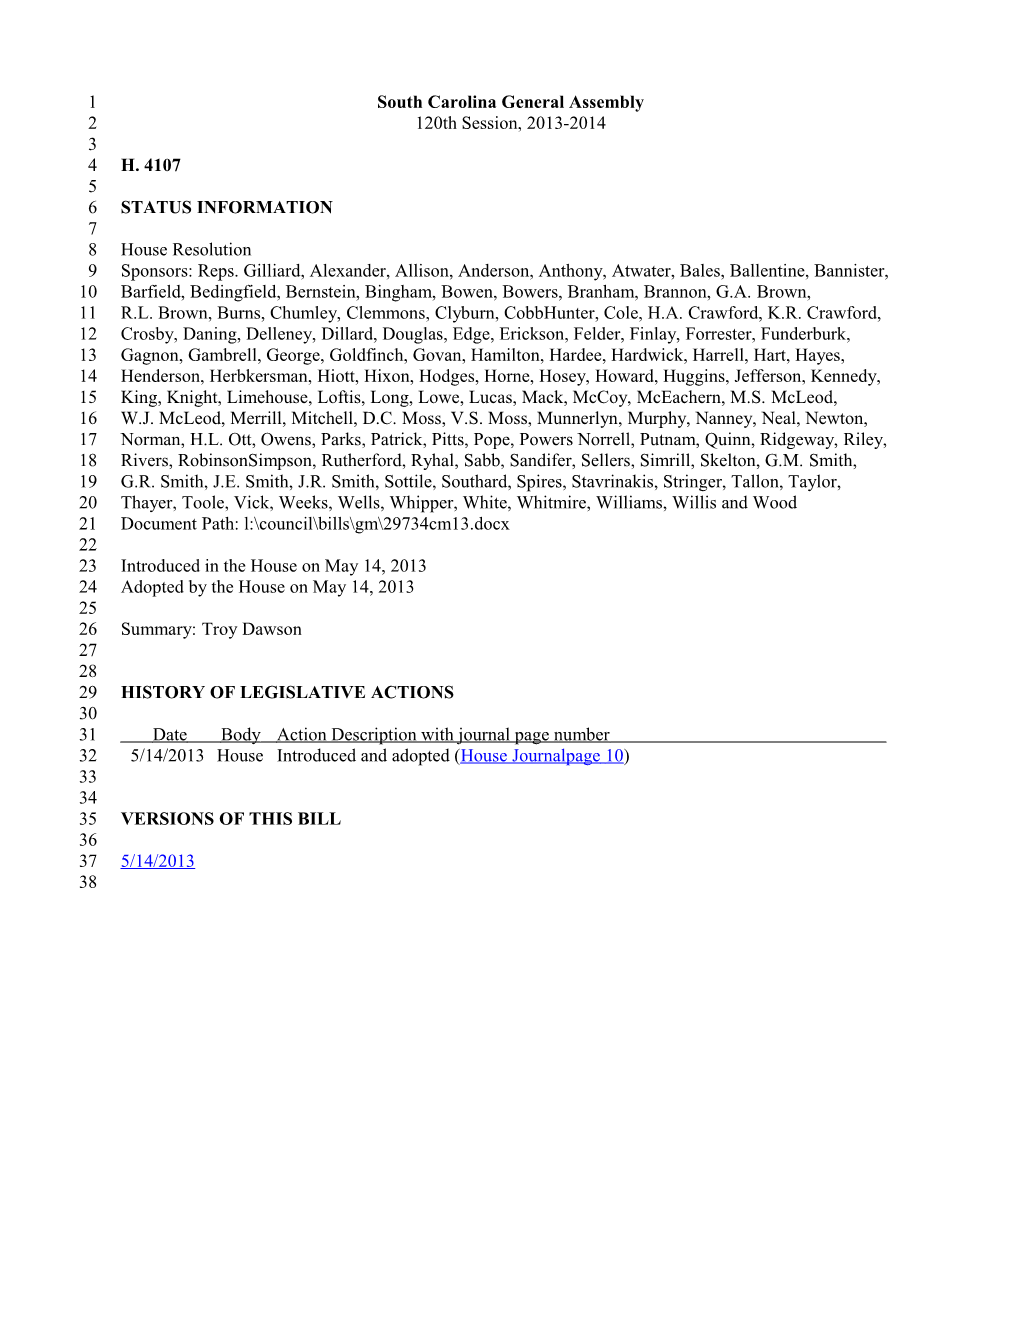 2013-2014 Bill 4107: Troy Dawson - South Carolina Legislature Online